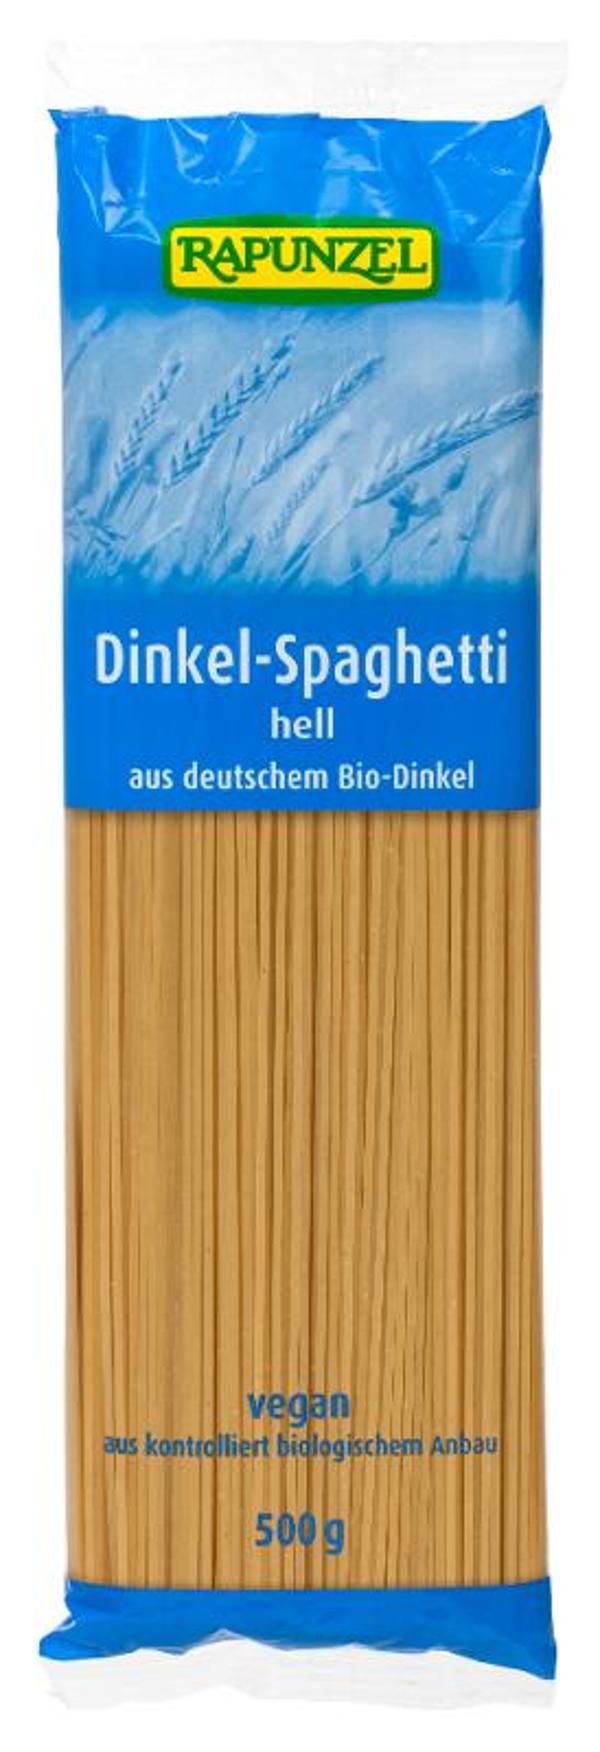 Produktfoto zu Dinkel-Spaghetti hell aus Deutschland